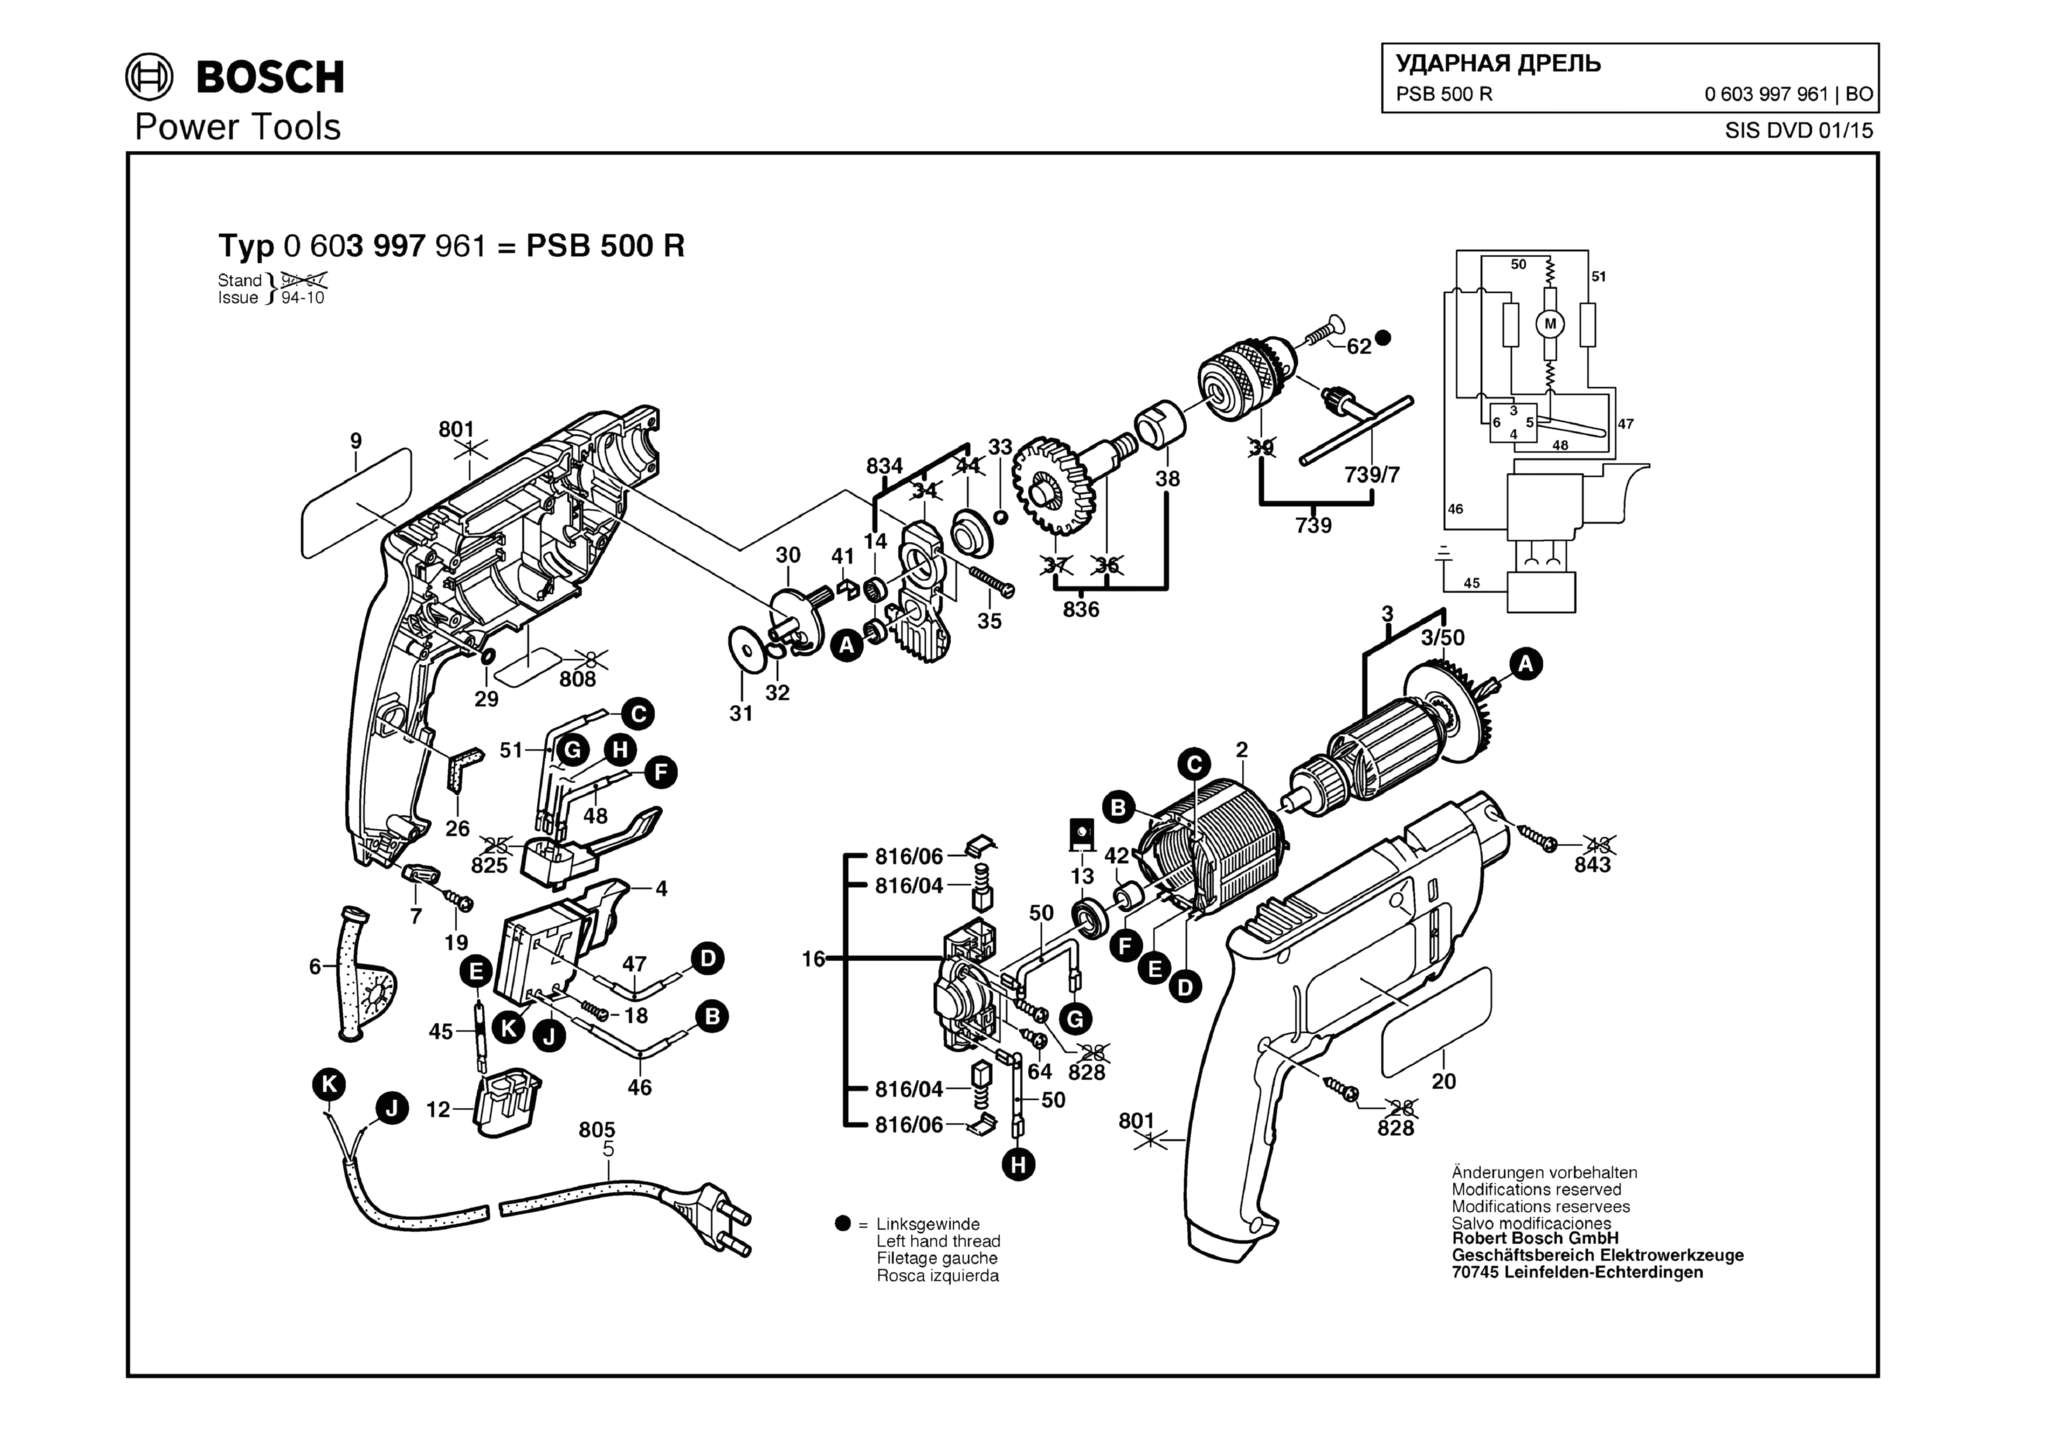 Запчасти, схема и деталировка Bosch PSB 500 R (ТИП 0603997961)